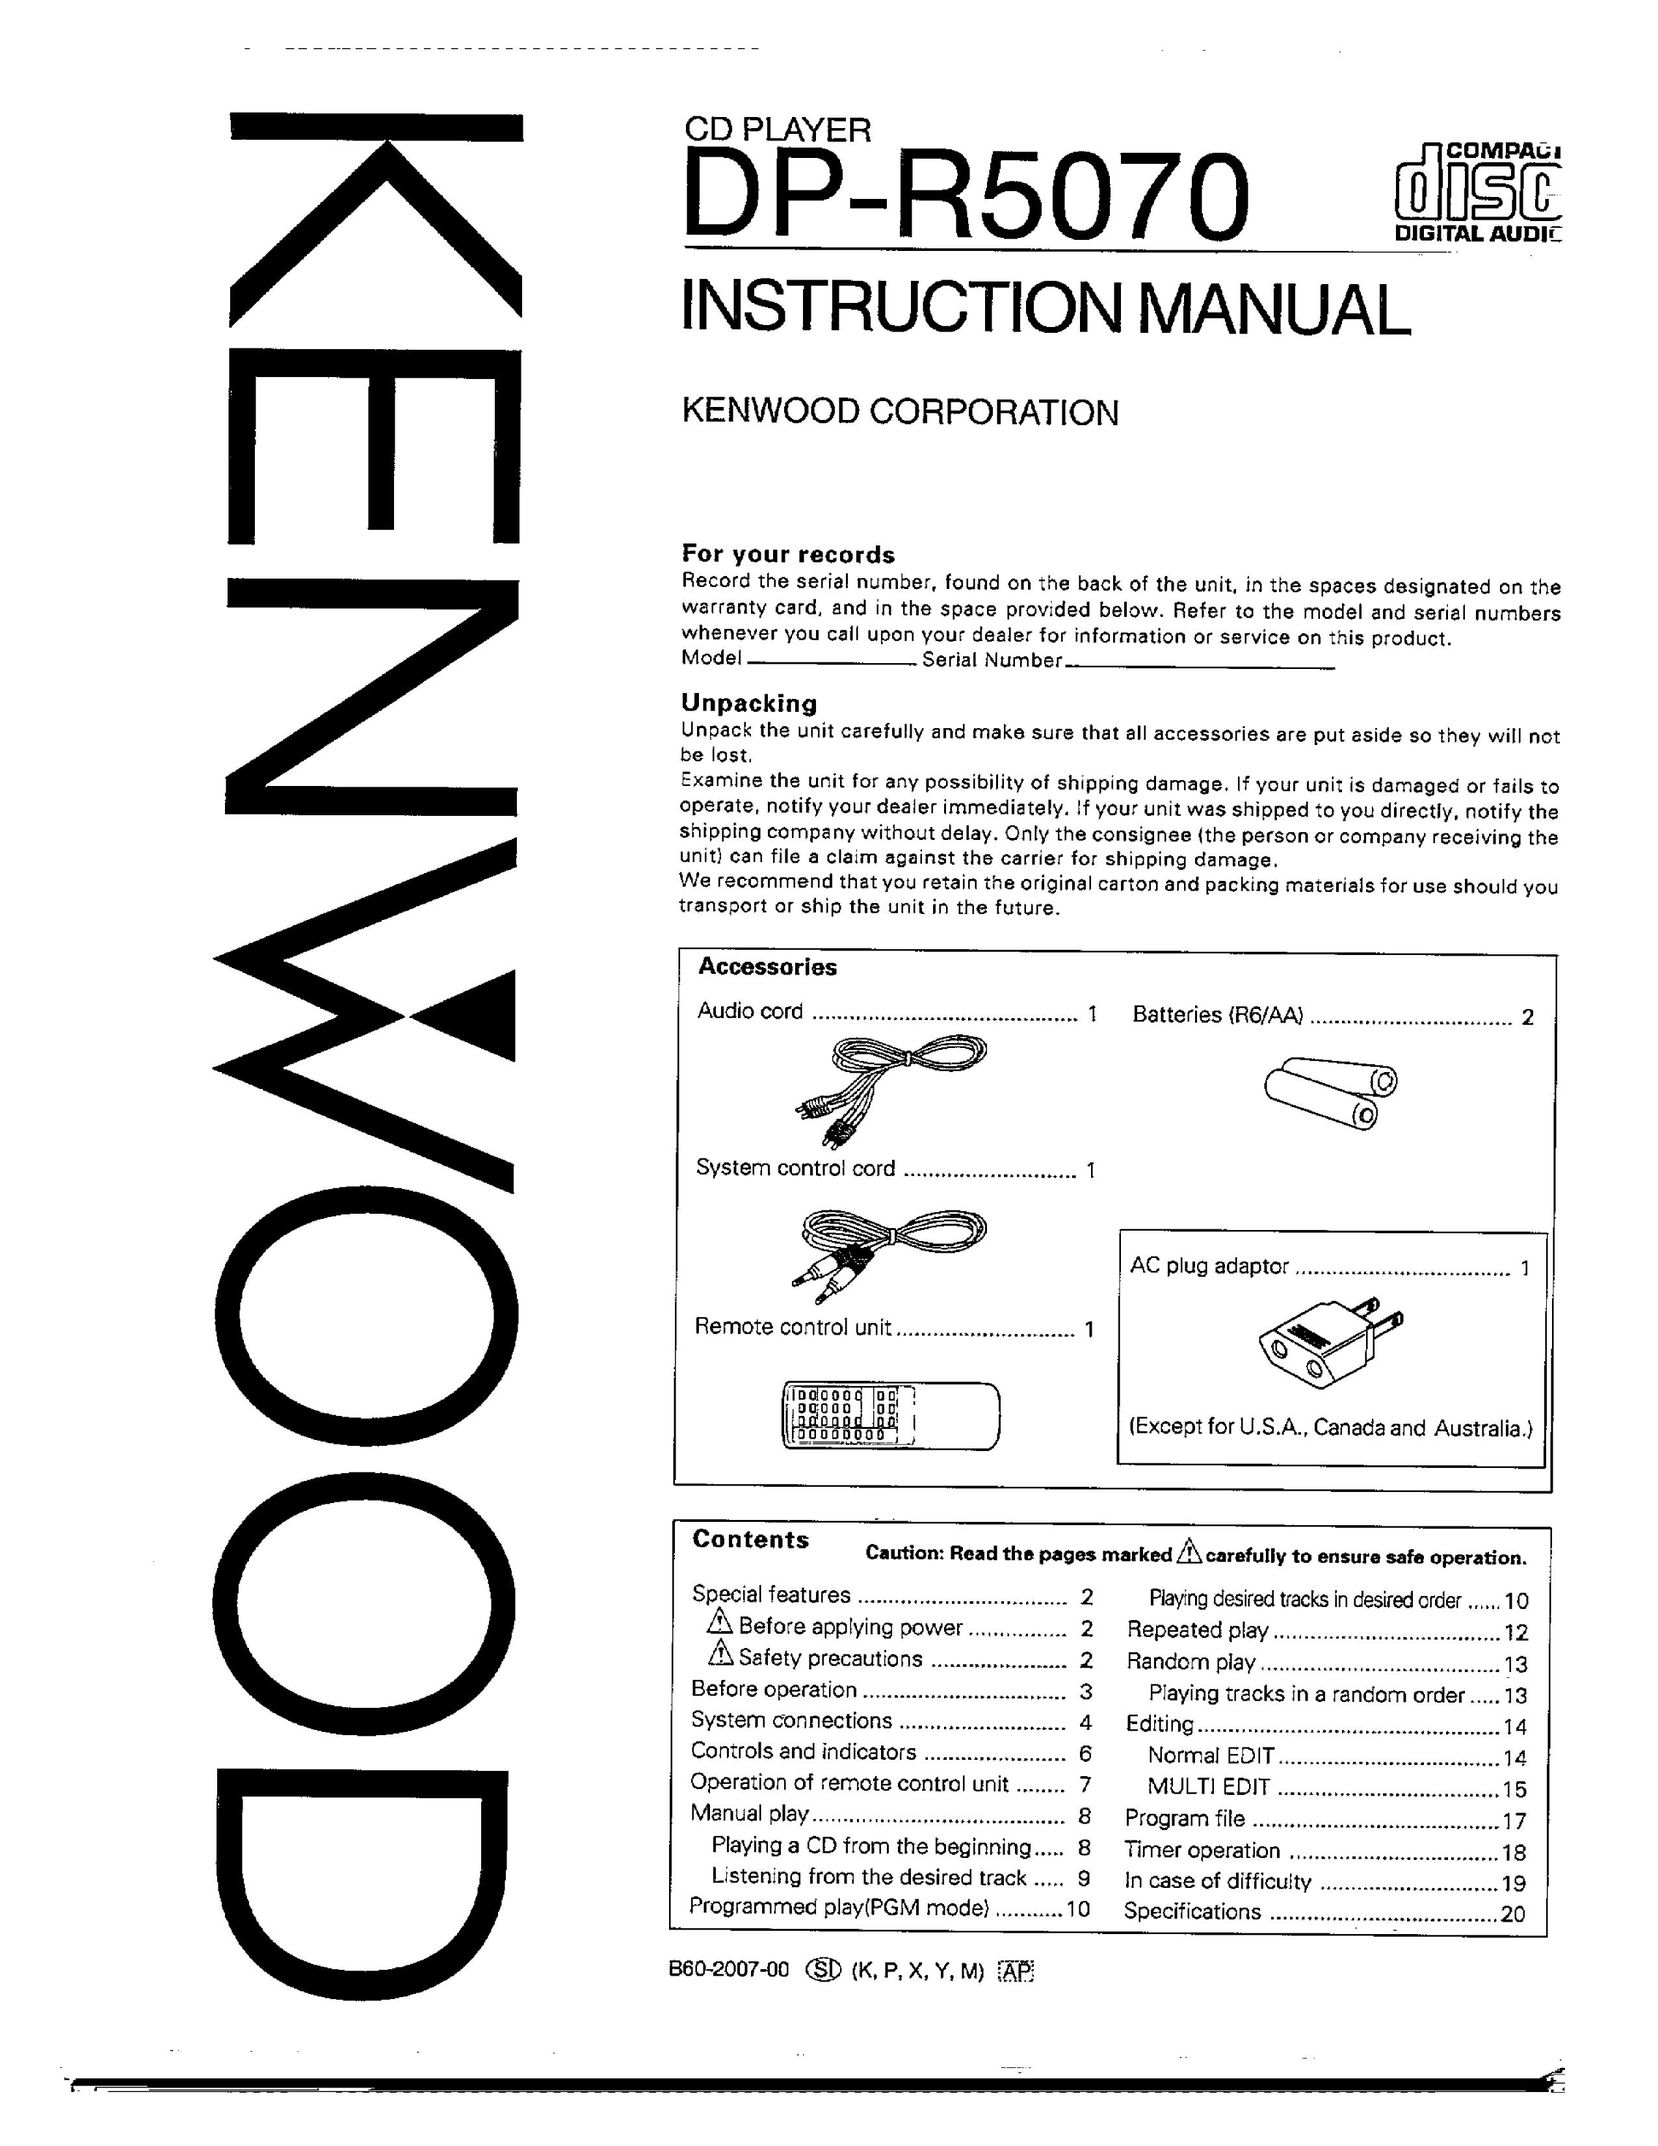 Kenwood DP-R5070 CD Player User Manual